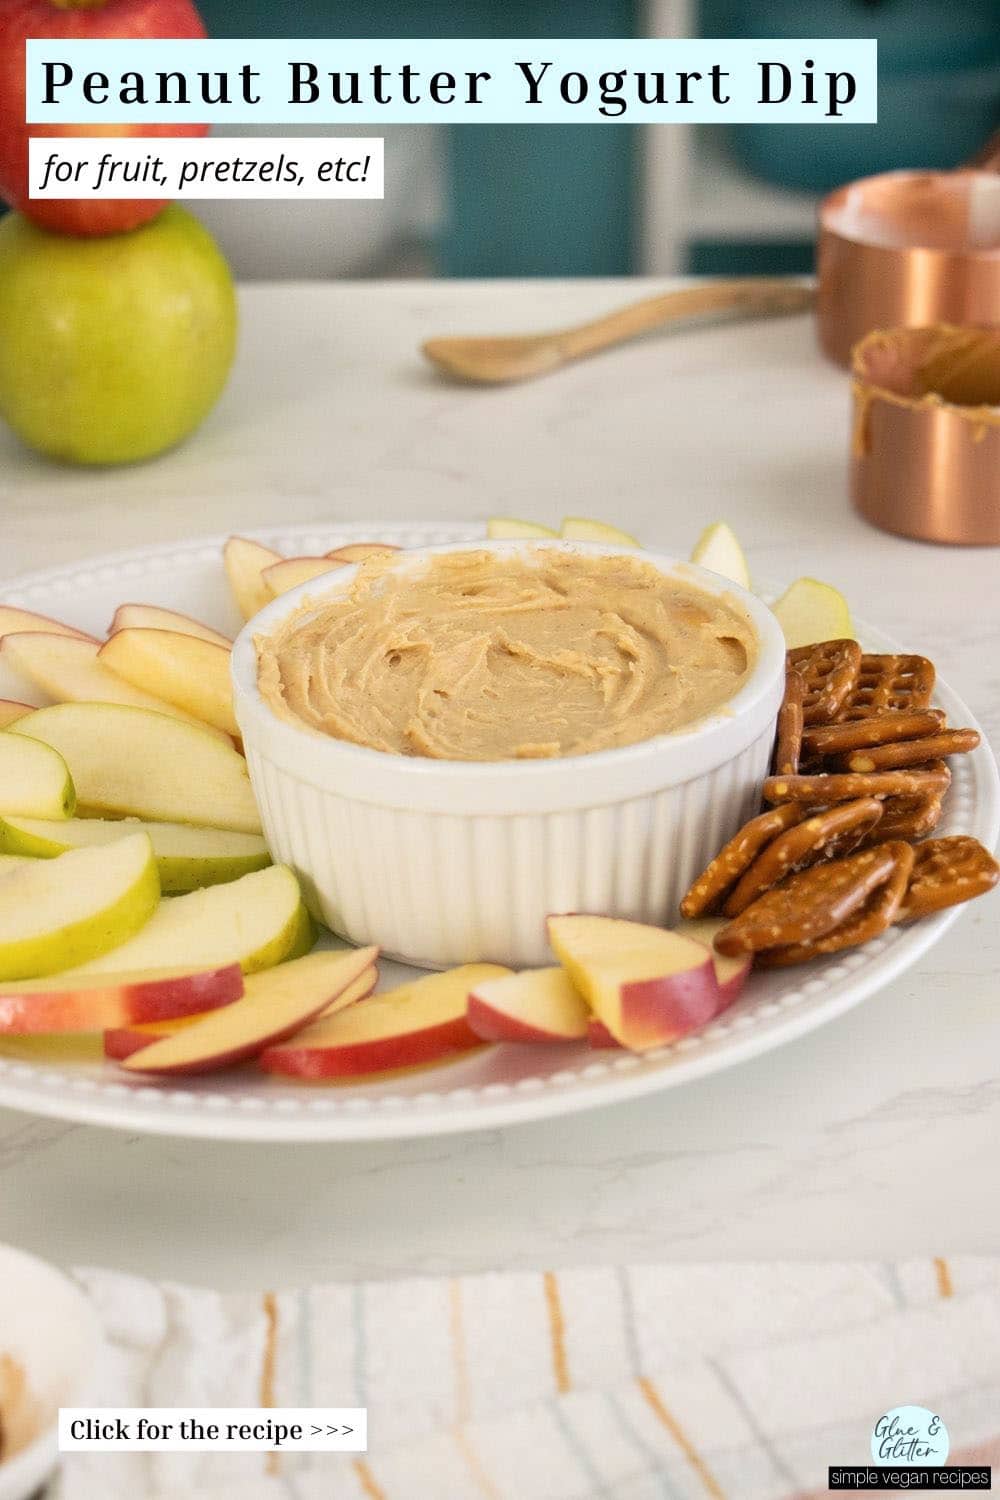 ramekin of peanut butter yogurt dip with apples and pretzels, text overlay